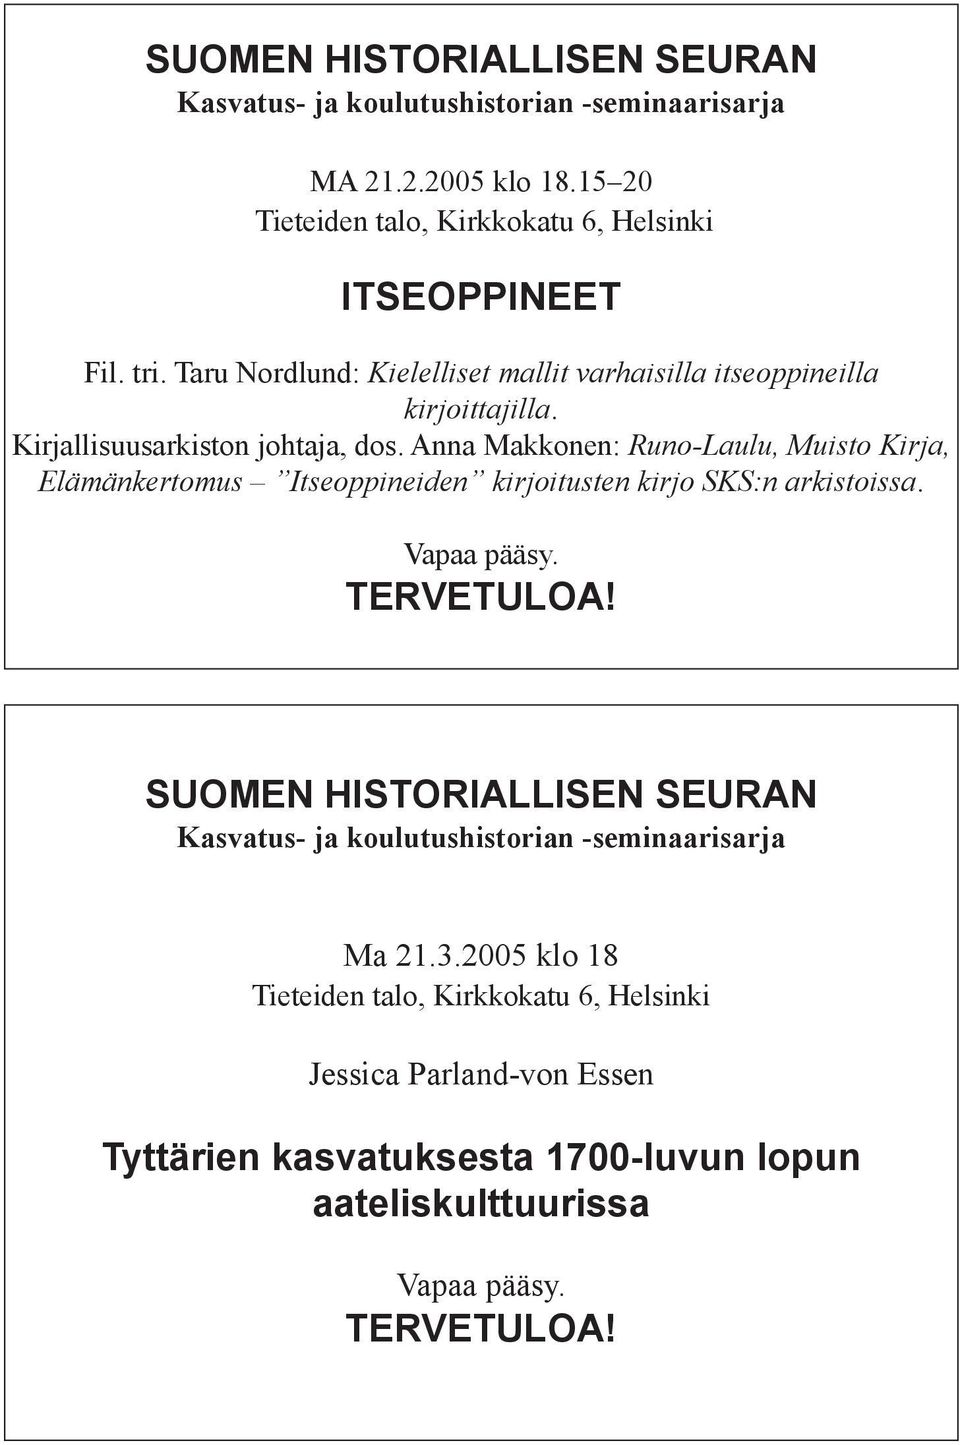 Anna Makkonen: Runo-Laulu, Muisto Kirja, Elämänkertomus Itseoppineiden kirjoitusten kirjo SKS:n arkistoissa. Vapaa pääsy. TERVETULOA!